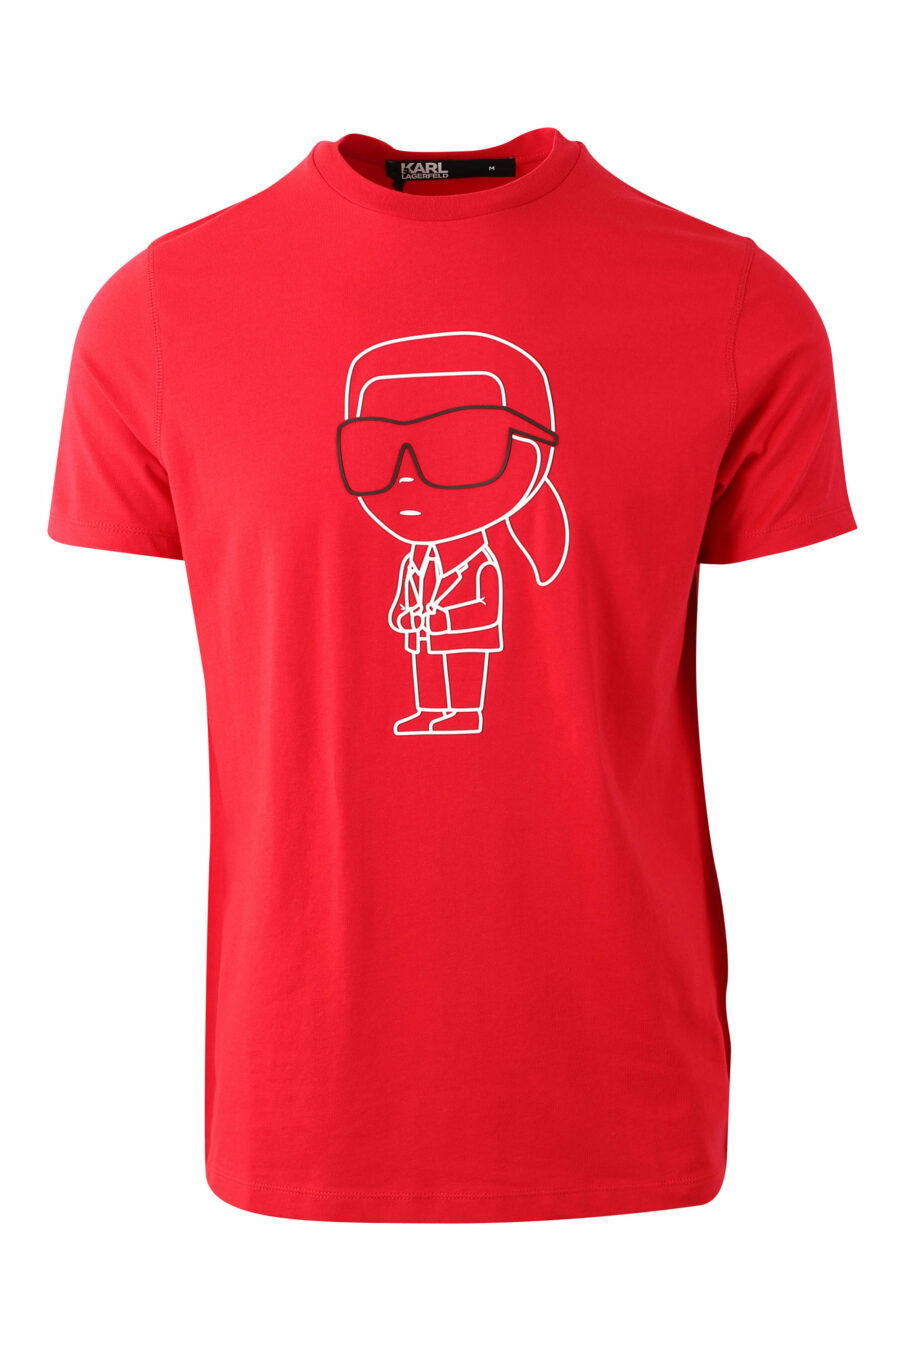 T-shirt vermelha com silhueta maxilogo "karl" - IMG 0048